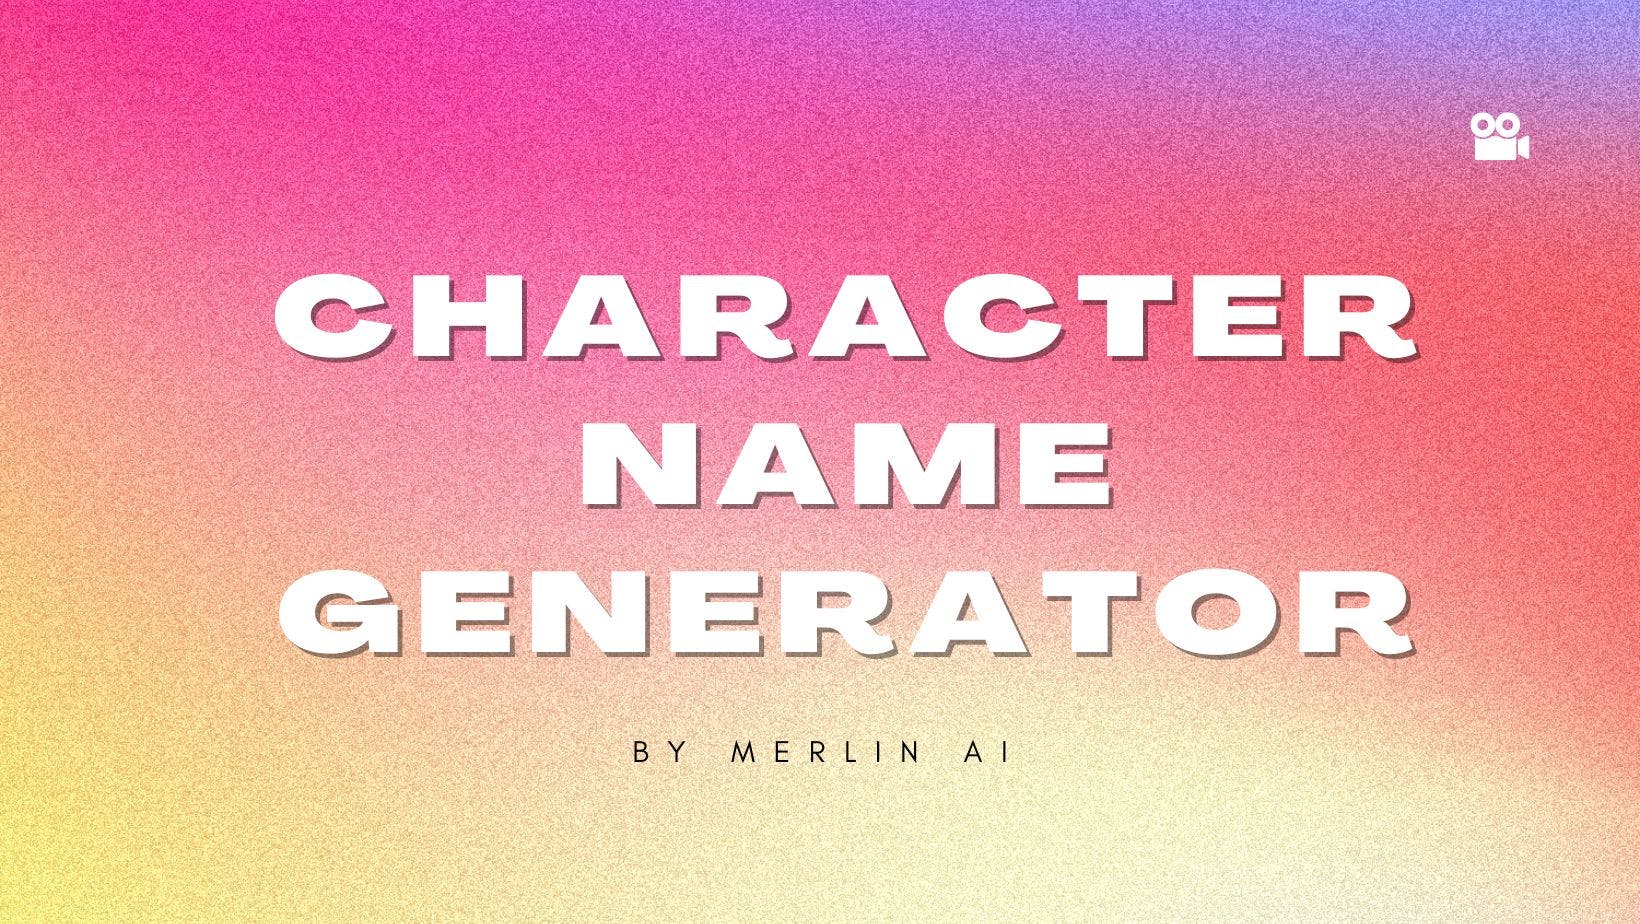 Cover Image for Бесплатный генератор имен персонажей от Merlin AI